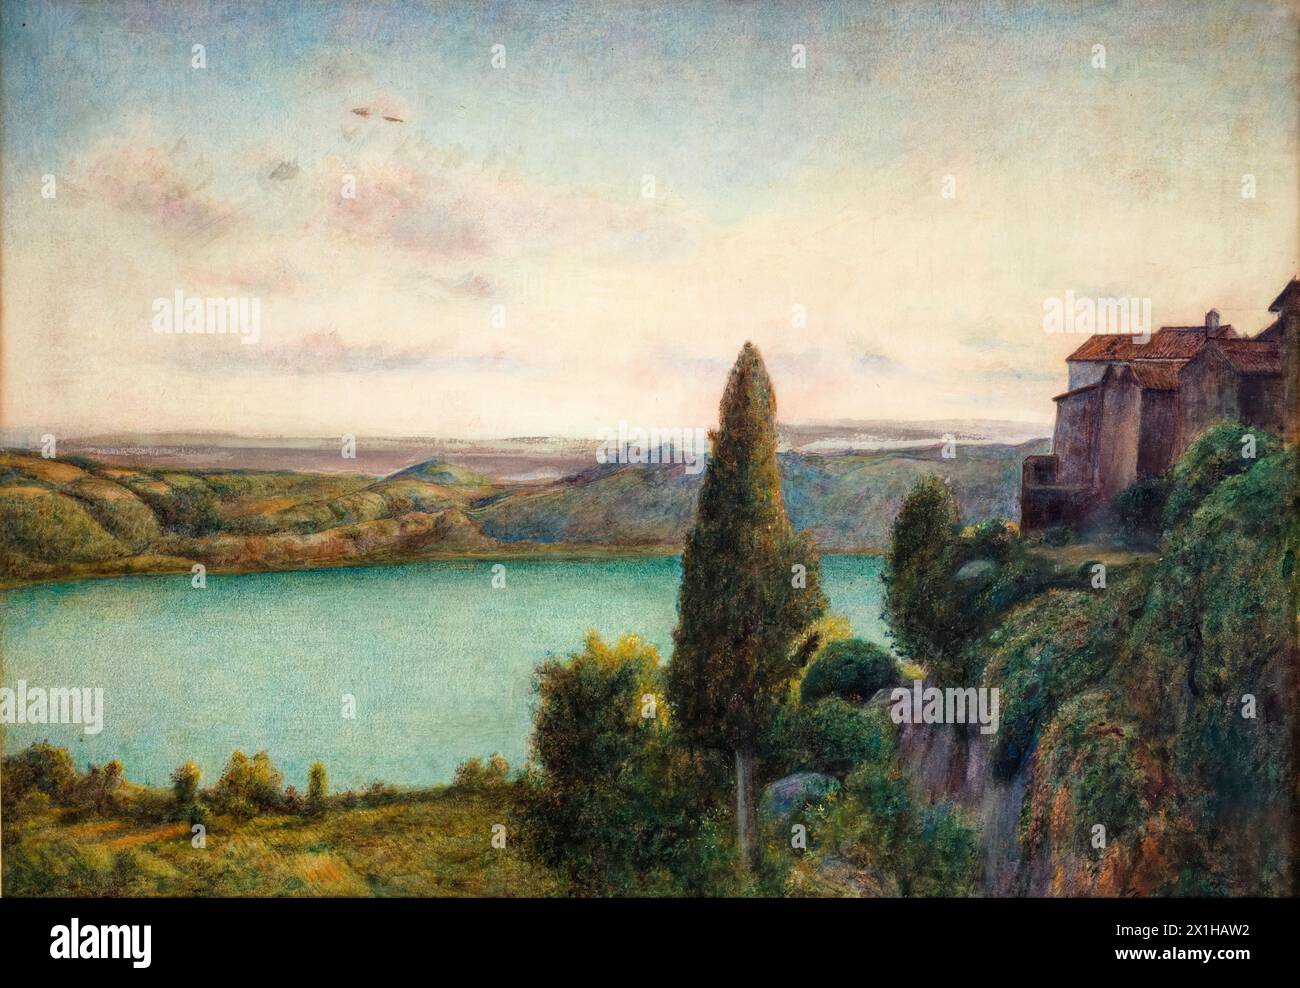 Marie Spartali Stillman, le lac de Nemi, peinture de paysage à l'aquarelle et à la gouache, 1899 Banque D'Images